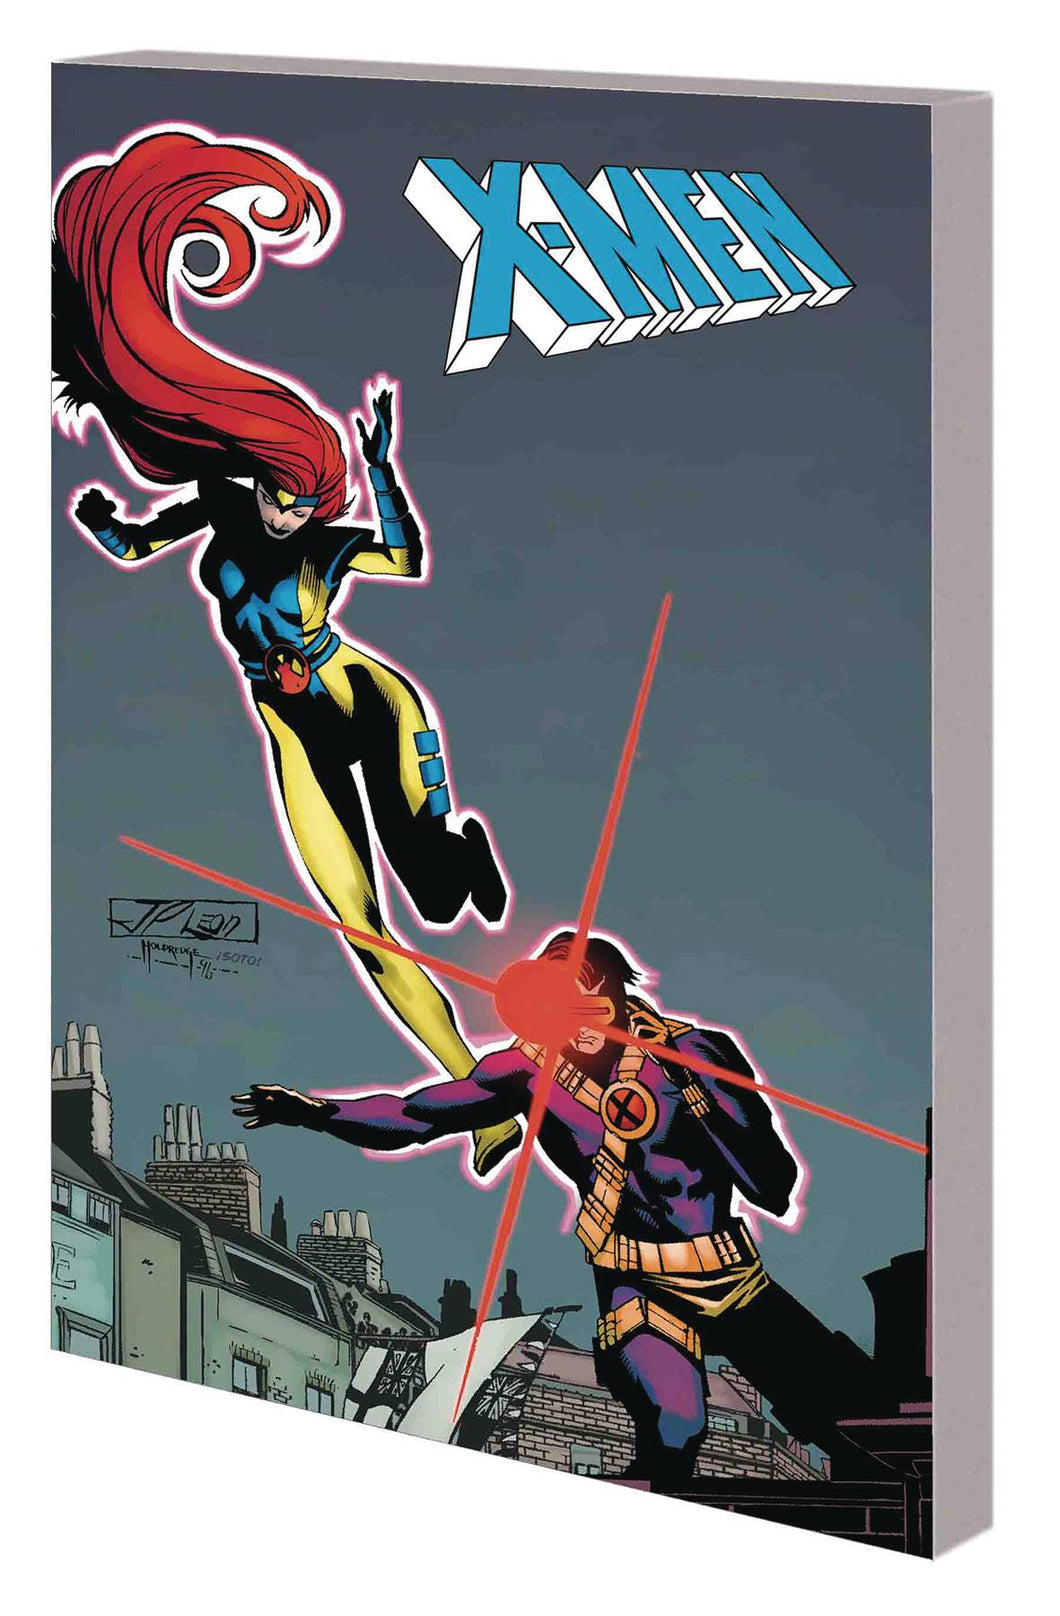 X-Men Cyclops & Phoenix Past & Future Tp